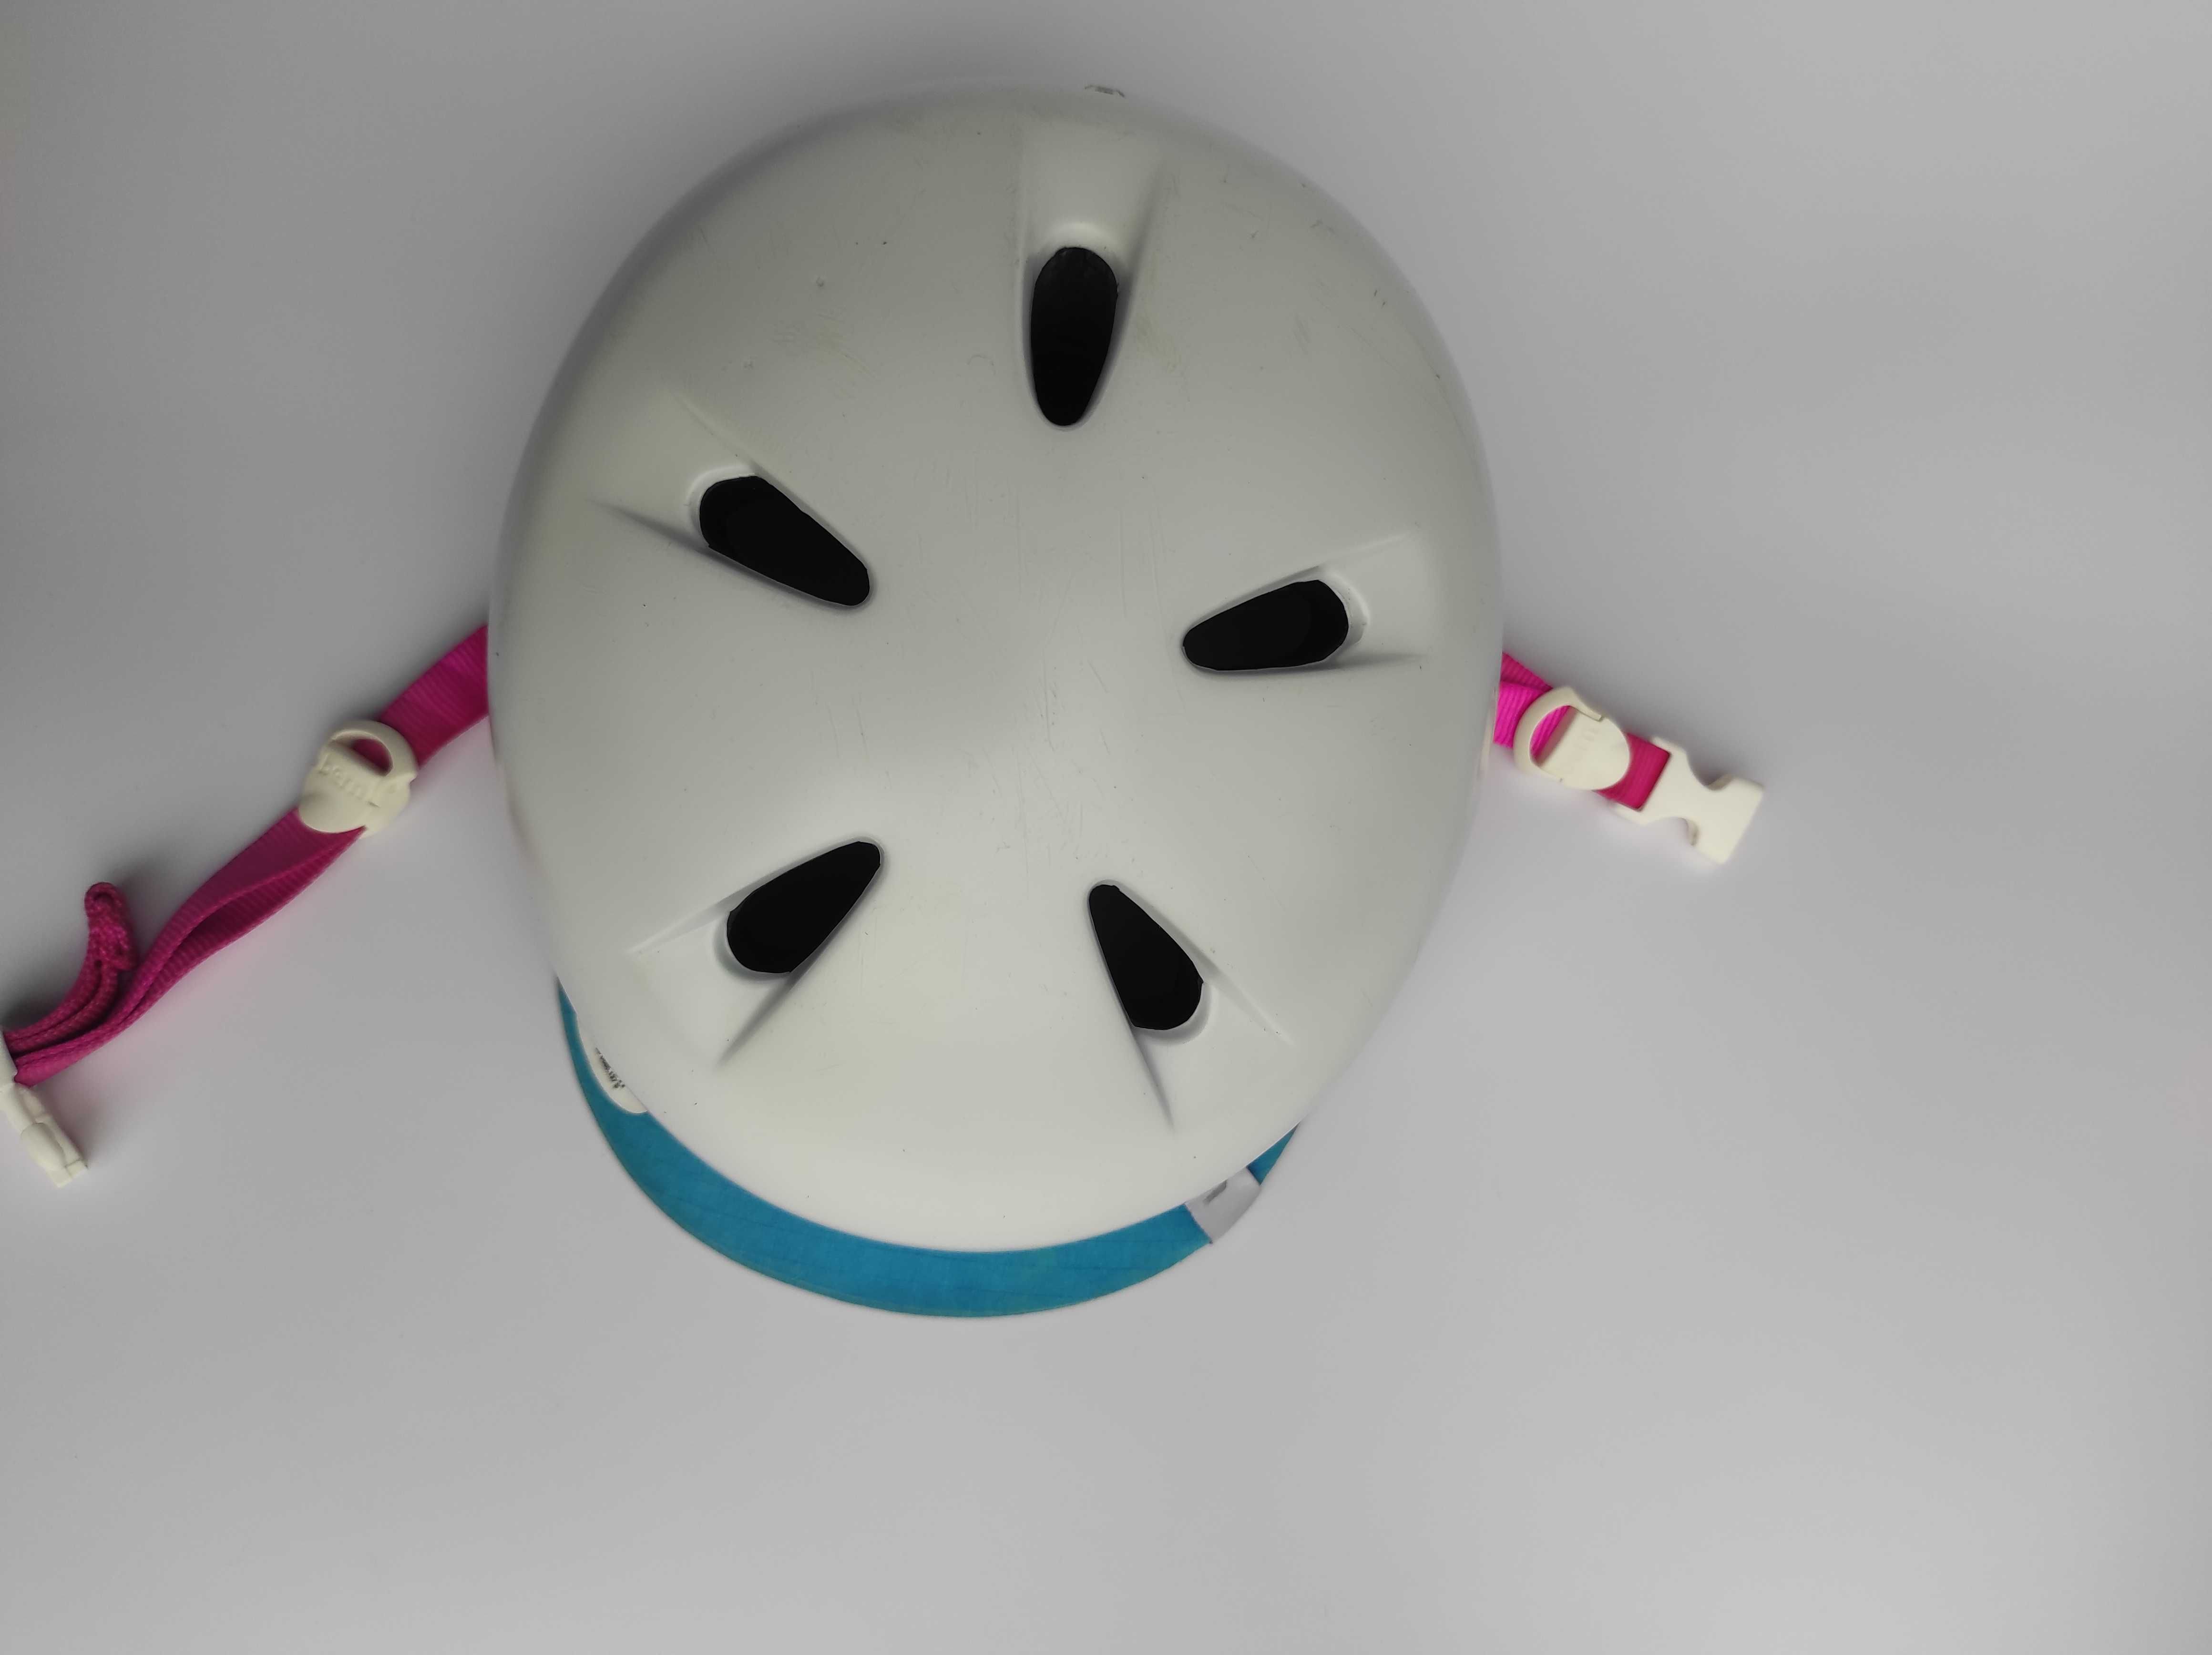 Шлем защитный котелок Bern Nina, размер 48-51.5см, детский